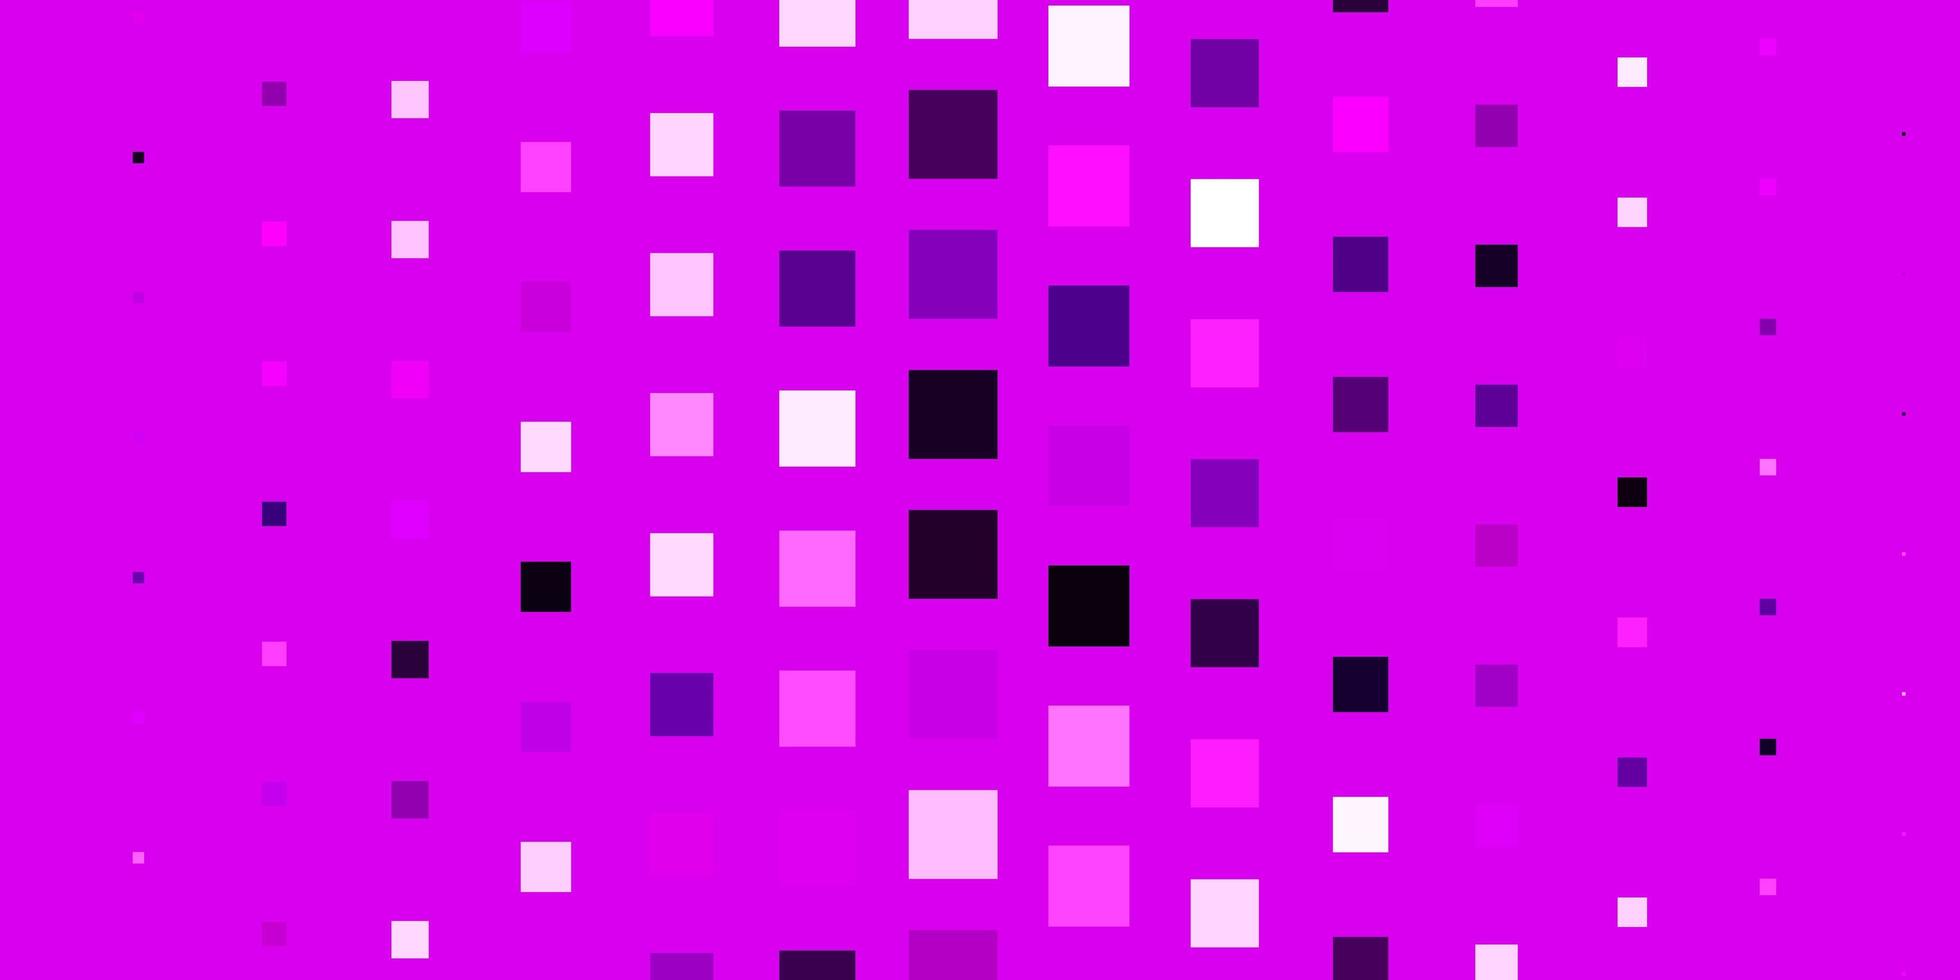 padrão de vetor rosa claro em estilo quadrado.